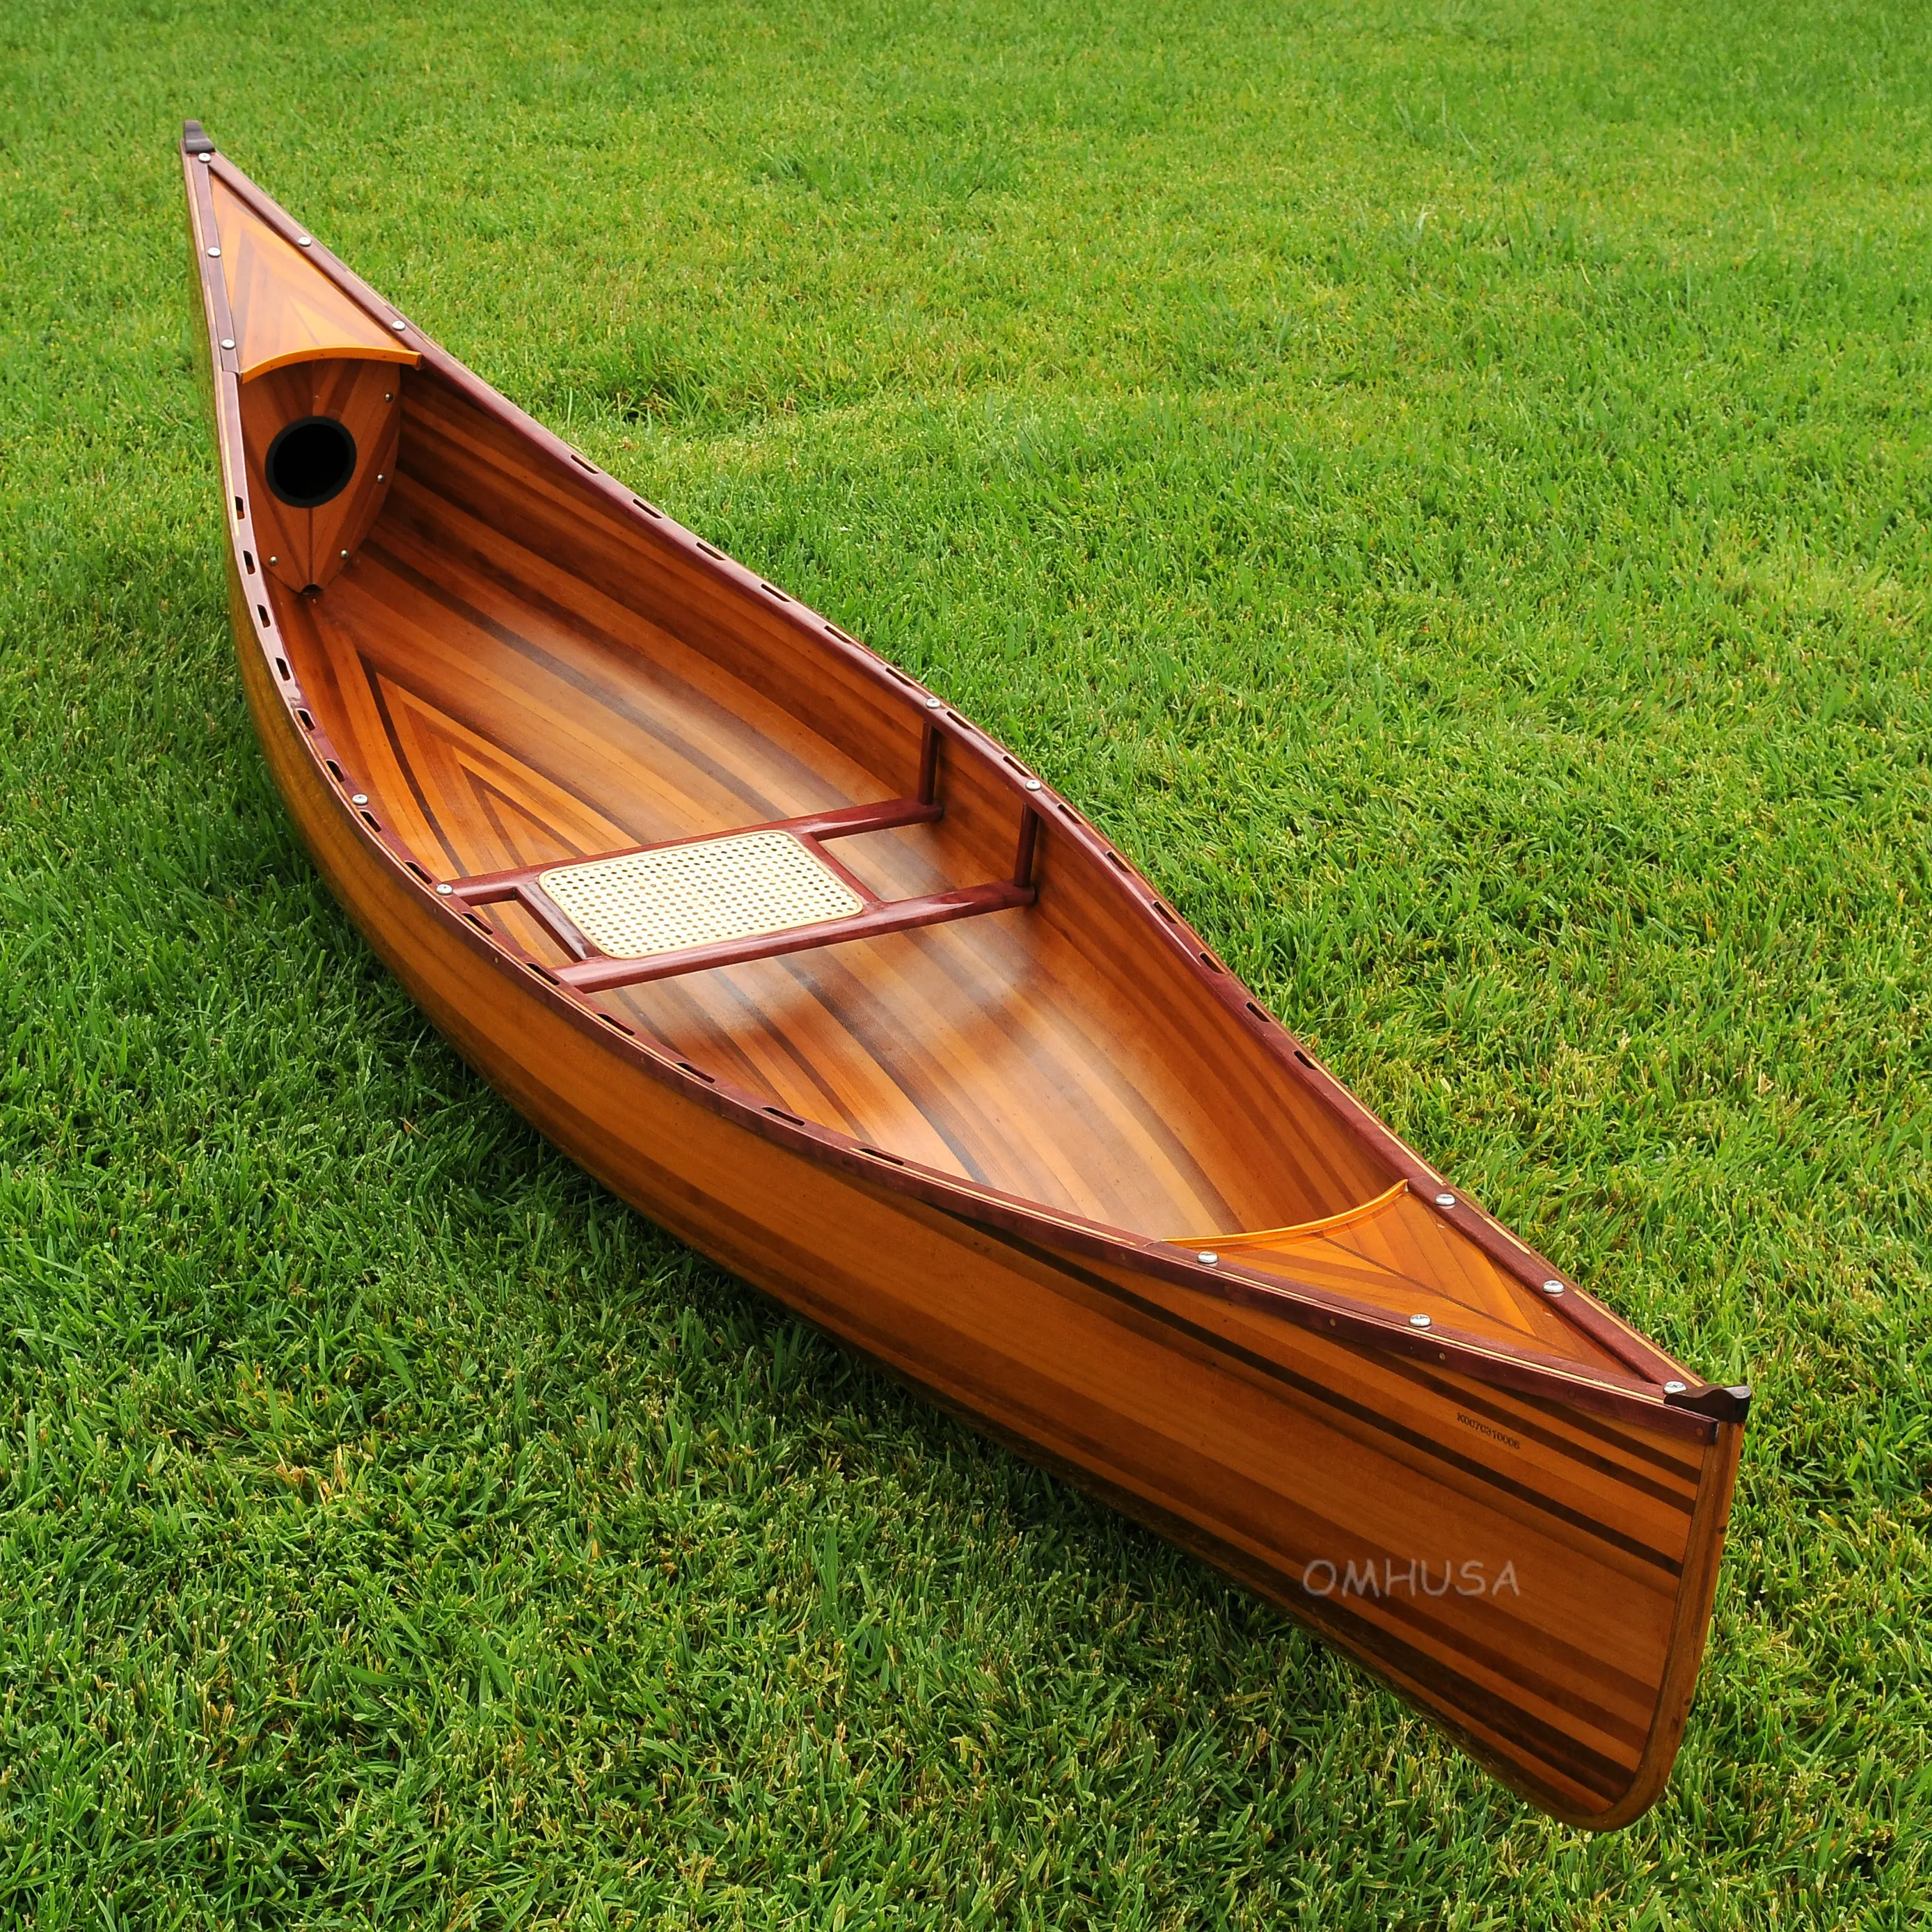 K007 Wooden Canoe 10 ft K007 WOODEN CANOE 10 FT L00.WEBP